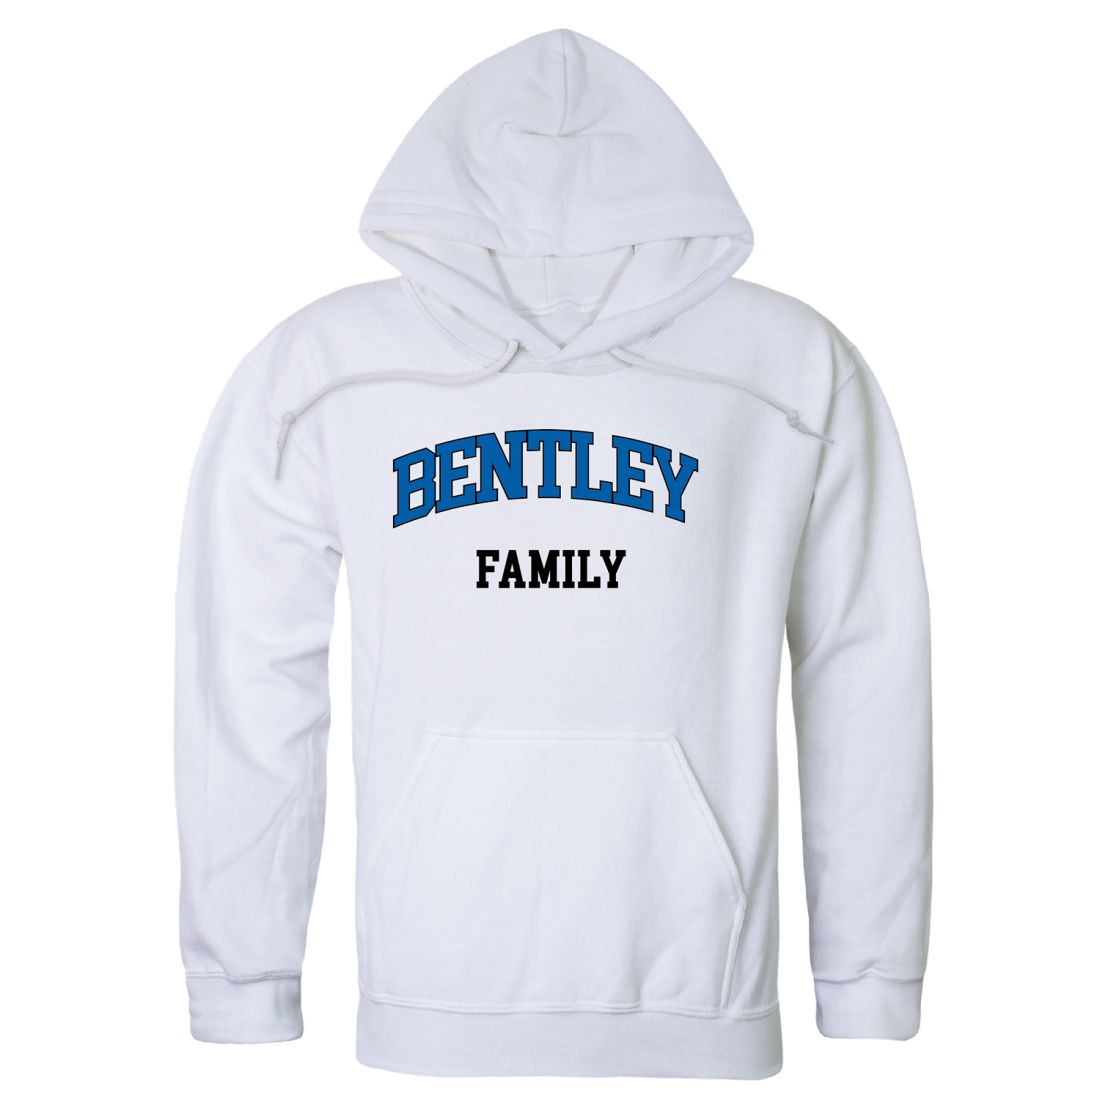 Bentley University Falcons Family Hoodie Sweatshirts